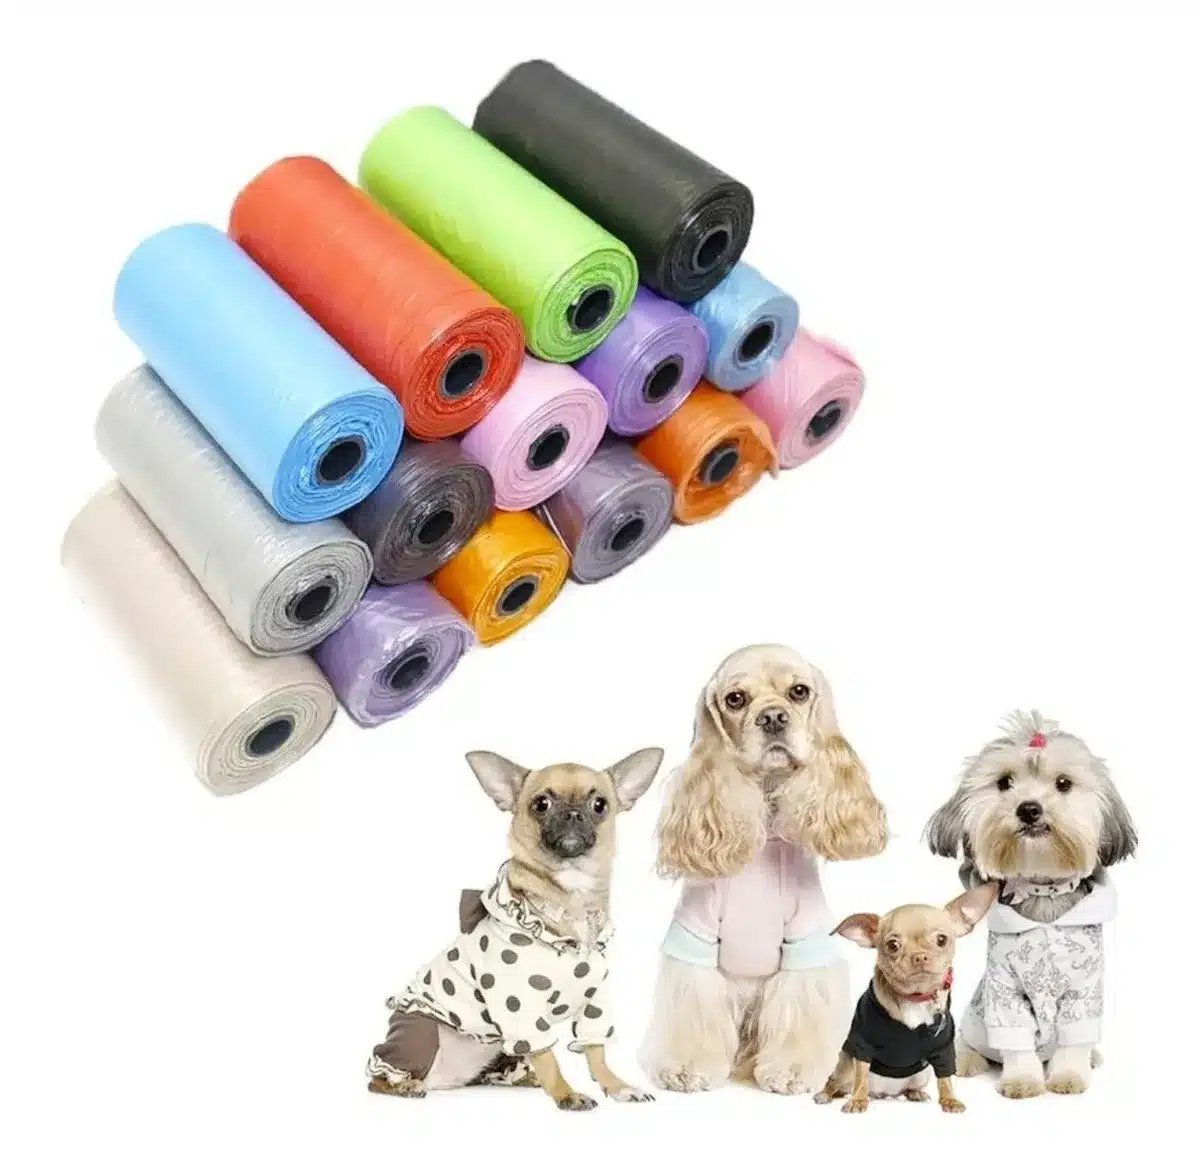 Bolsas para excrementos de perro – Bolsas de basura para perros a prueba de  fugas, repuestos para bolsas de caca para mascotas, 9 rollos/135 unidades